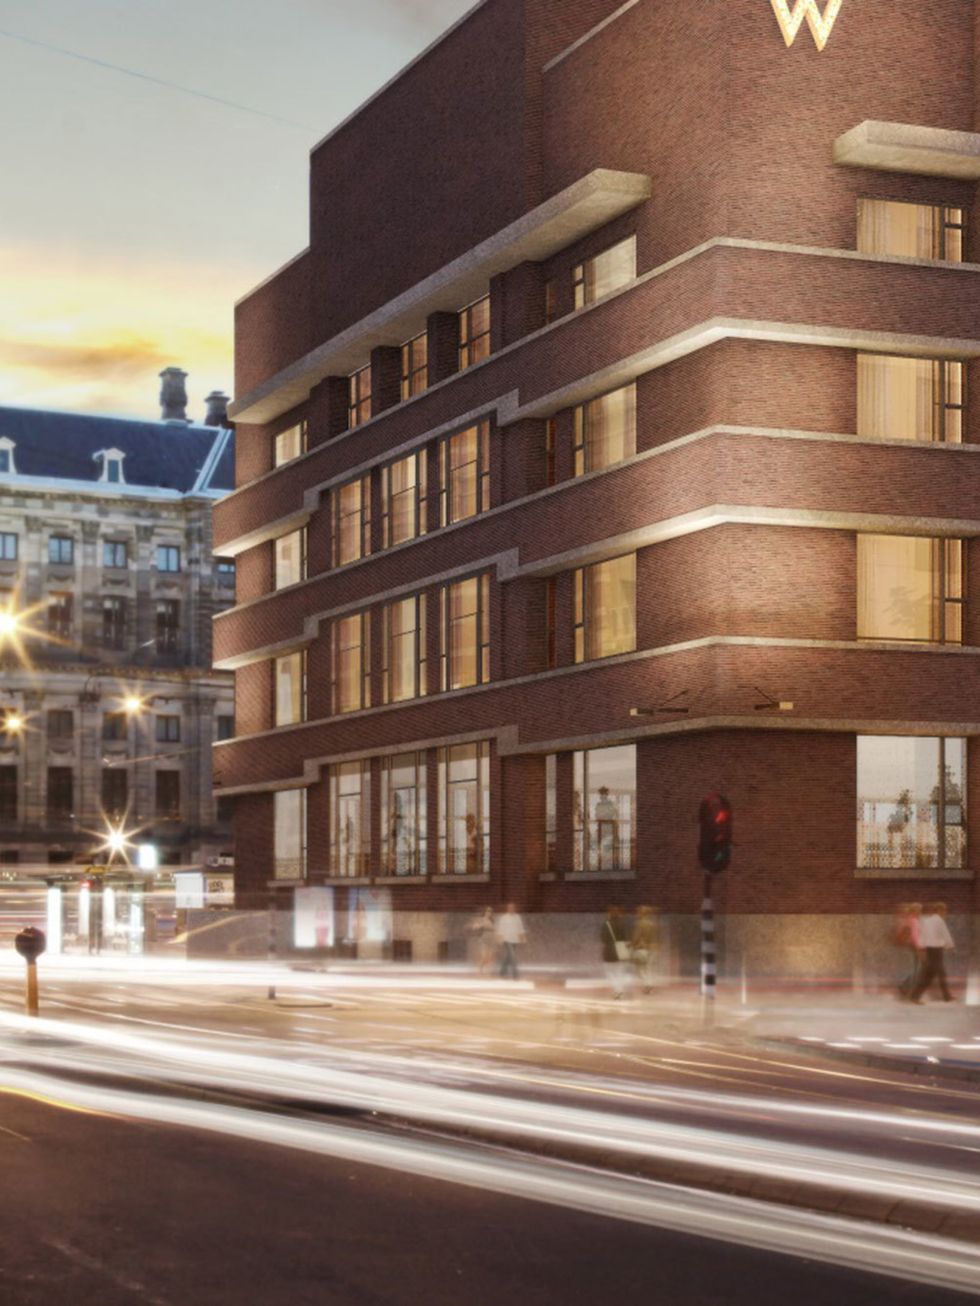 <p>In een pand dat verbouwd is in een mix van historisch en modern design bevinden zich twee restaurants, een event center en een heuze rooftopbar. En dit alles net naast de Dam. &nbsp;<br><br><br>
<strong data-redactor-tag="strong"><a href="http://www.wamsterdam.nl/" target="_blank">W Hotel Amsterdam</a></strong>, Spuistraat 175, Amsterdam<br></p>